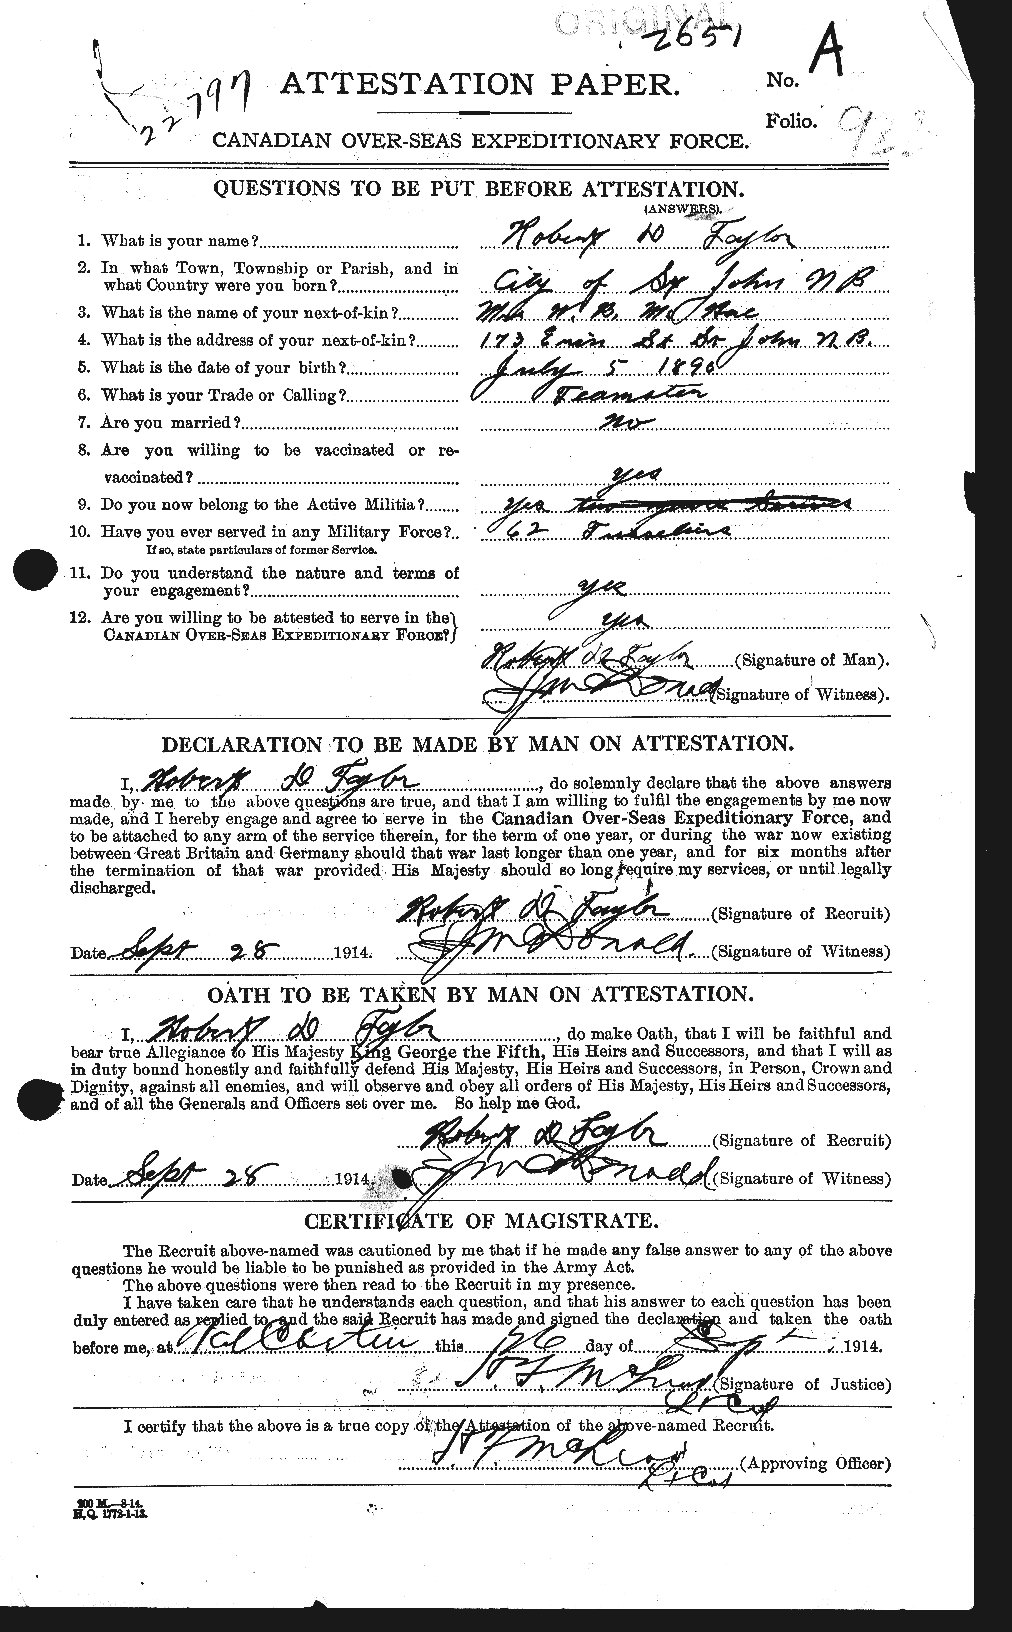 Dossiers du Personnel de la Première Guerre mondiale - CEC 627468a